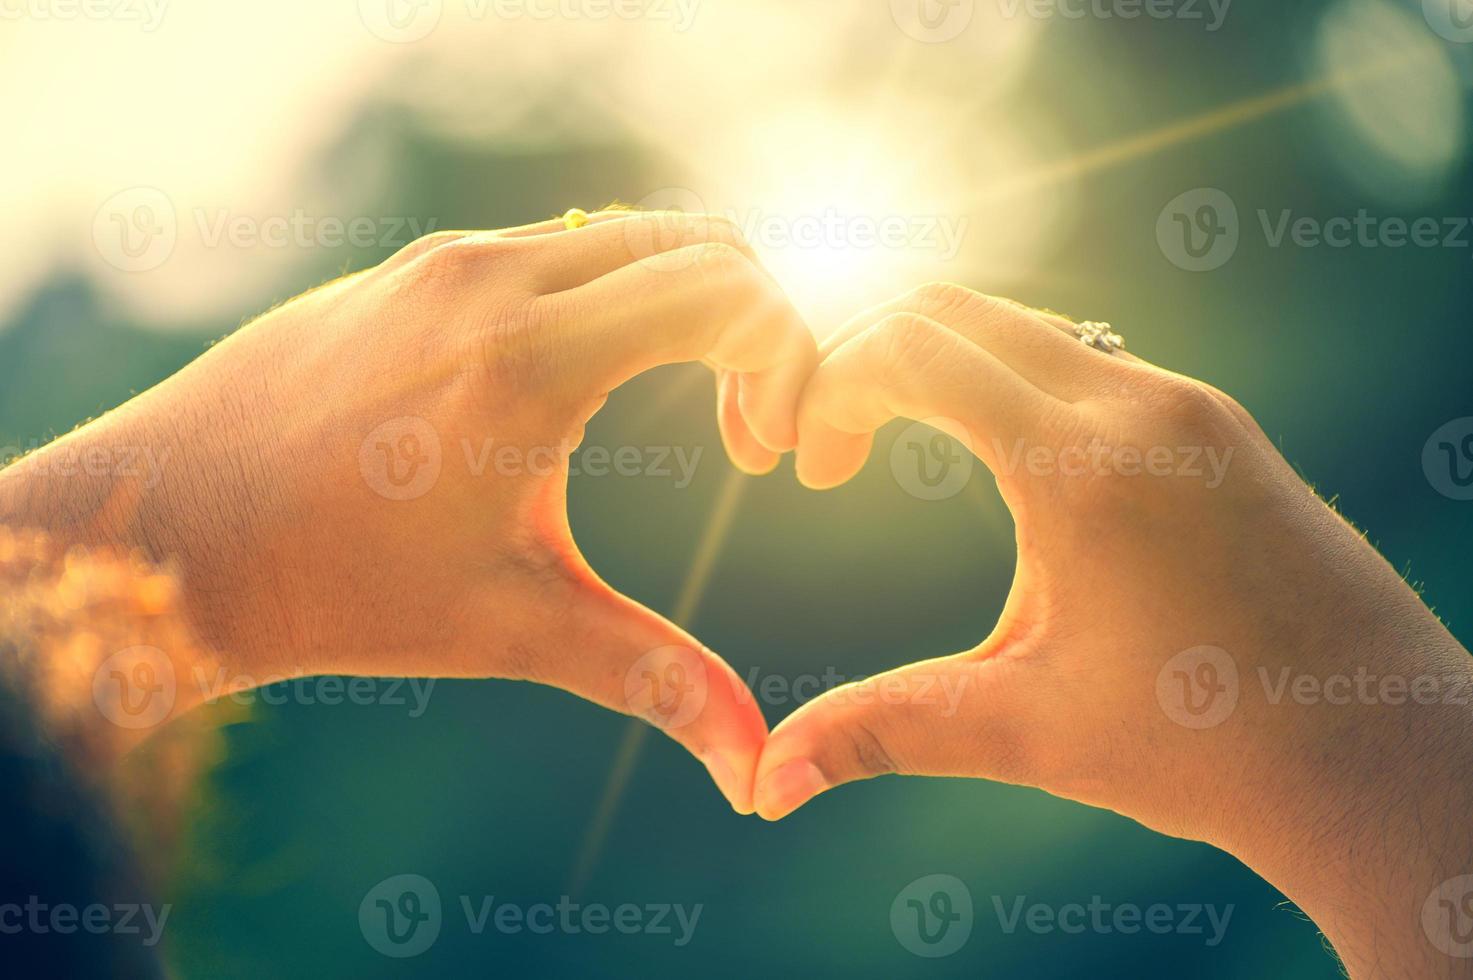 le mani delle donne e degli uomini sono a forma di cuore con la luce del sole che passa attraverso le mani foto